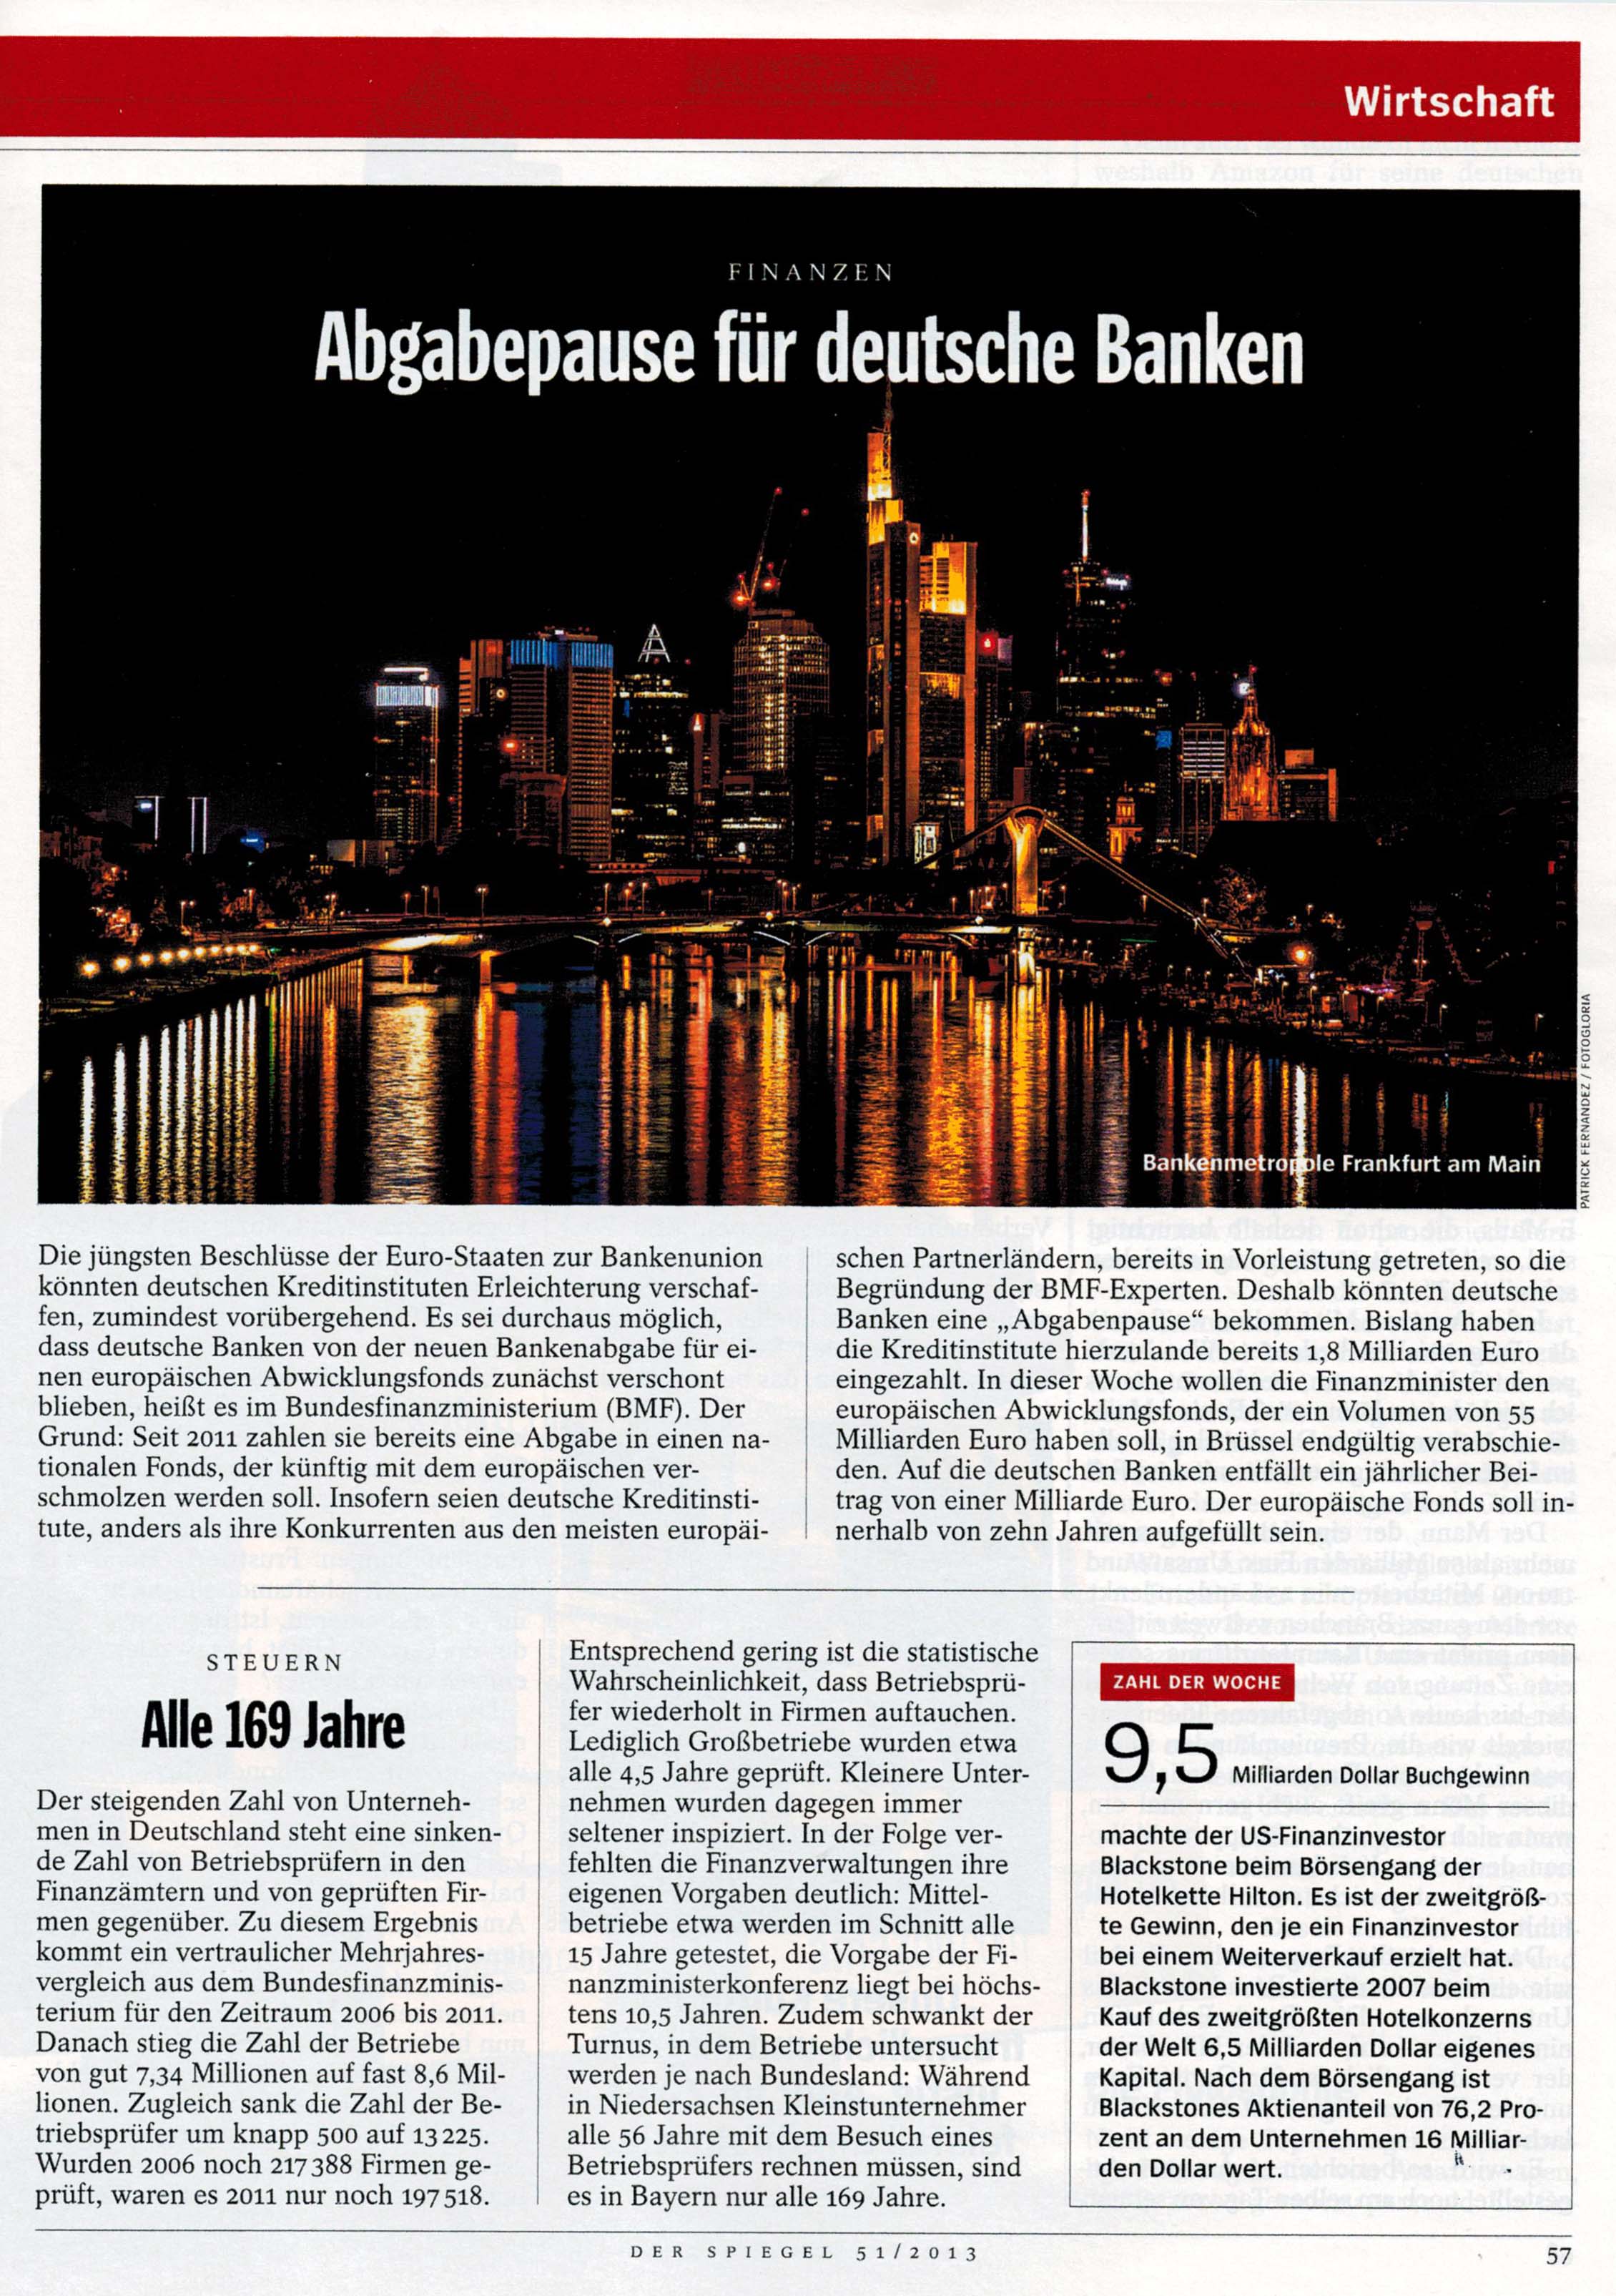 Spiegel 51/2013